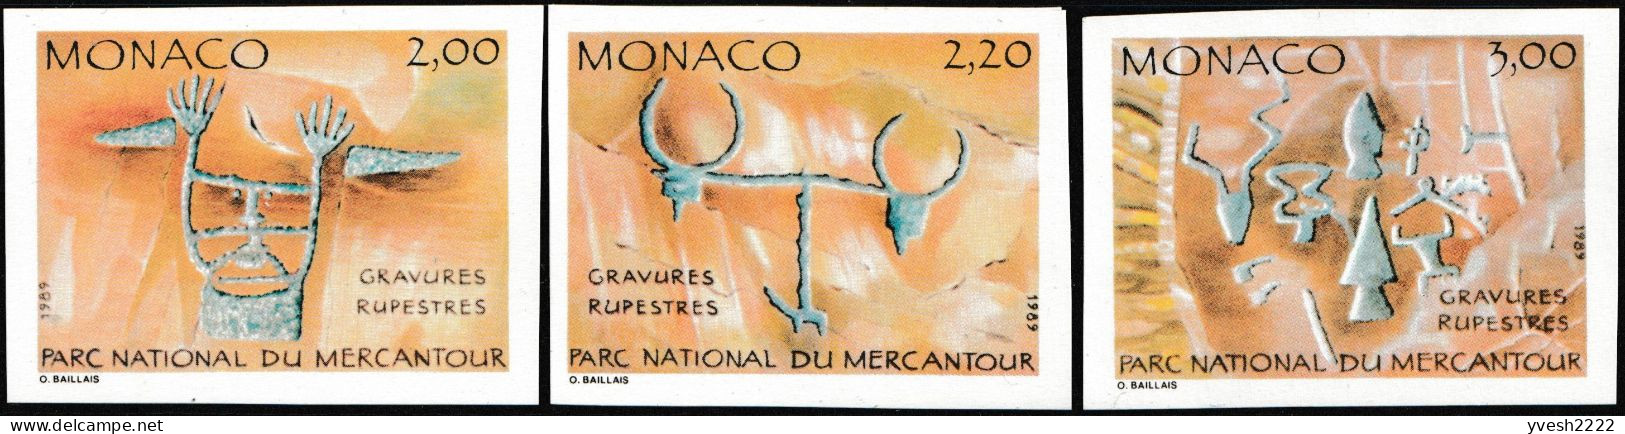 Monaco 1989 Y&T 1663 à 1668. Non Dentelés. Inscriptions Rupestres Du Parc Du Mercantour - Vor- Und Frühgeschichte